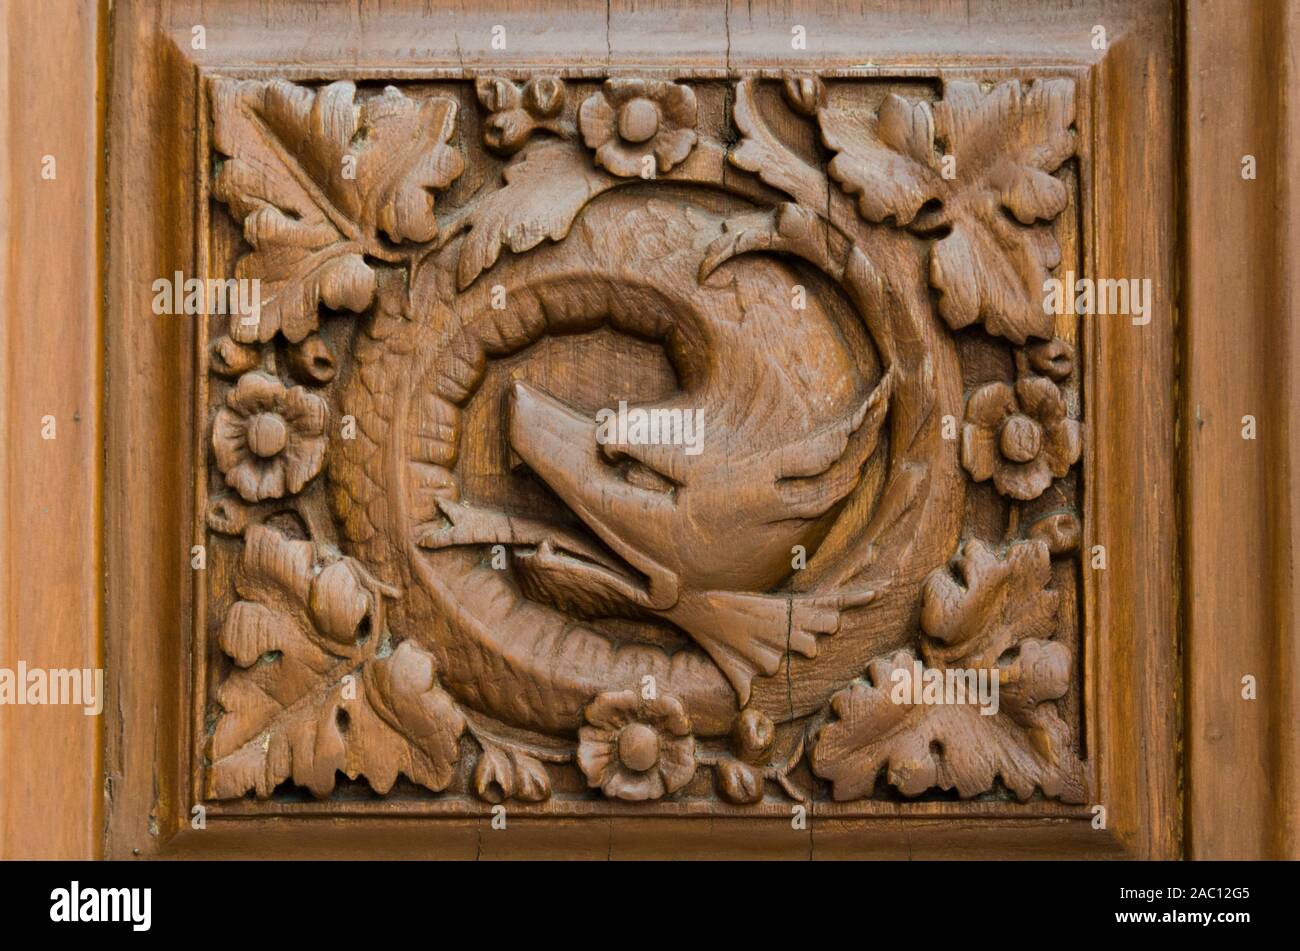 Mexico / Mexique ; 21 Mai 2014 : la sculpture sur bois représentant Quetzalcoatl, le serpent à plumes mésoaméricain, détail d'une porte du château de Chapultepec Banque D'Images